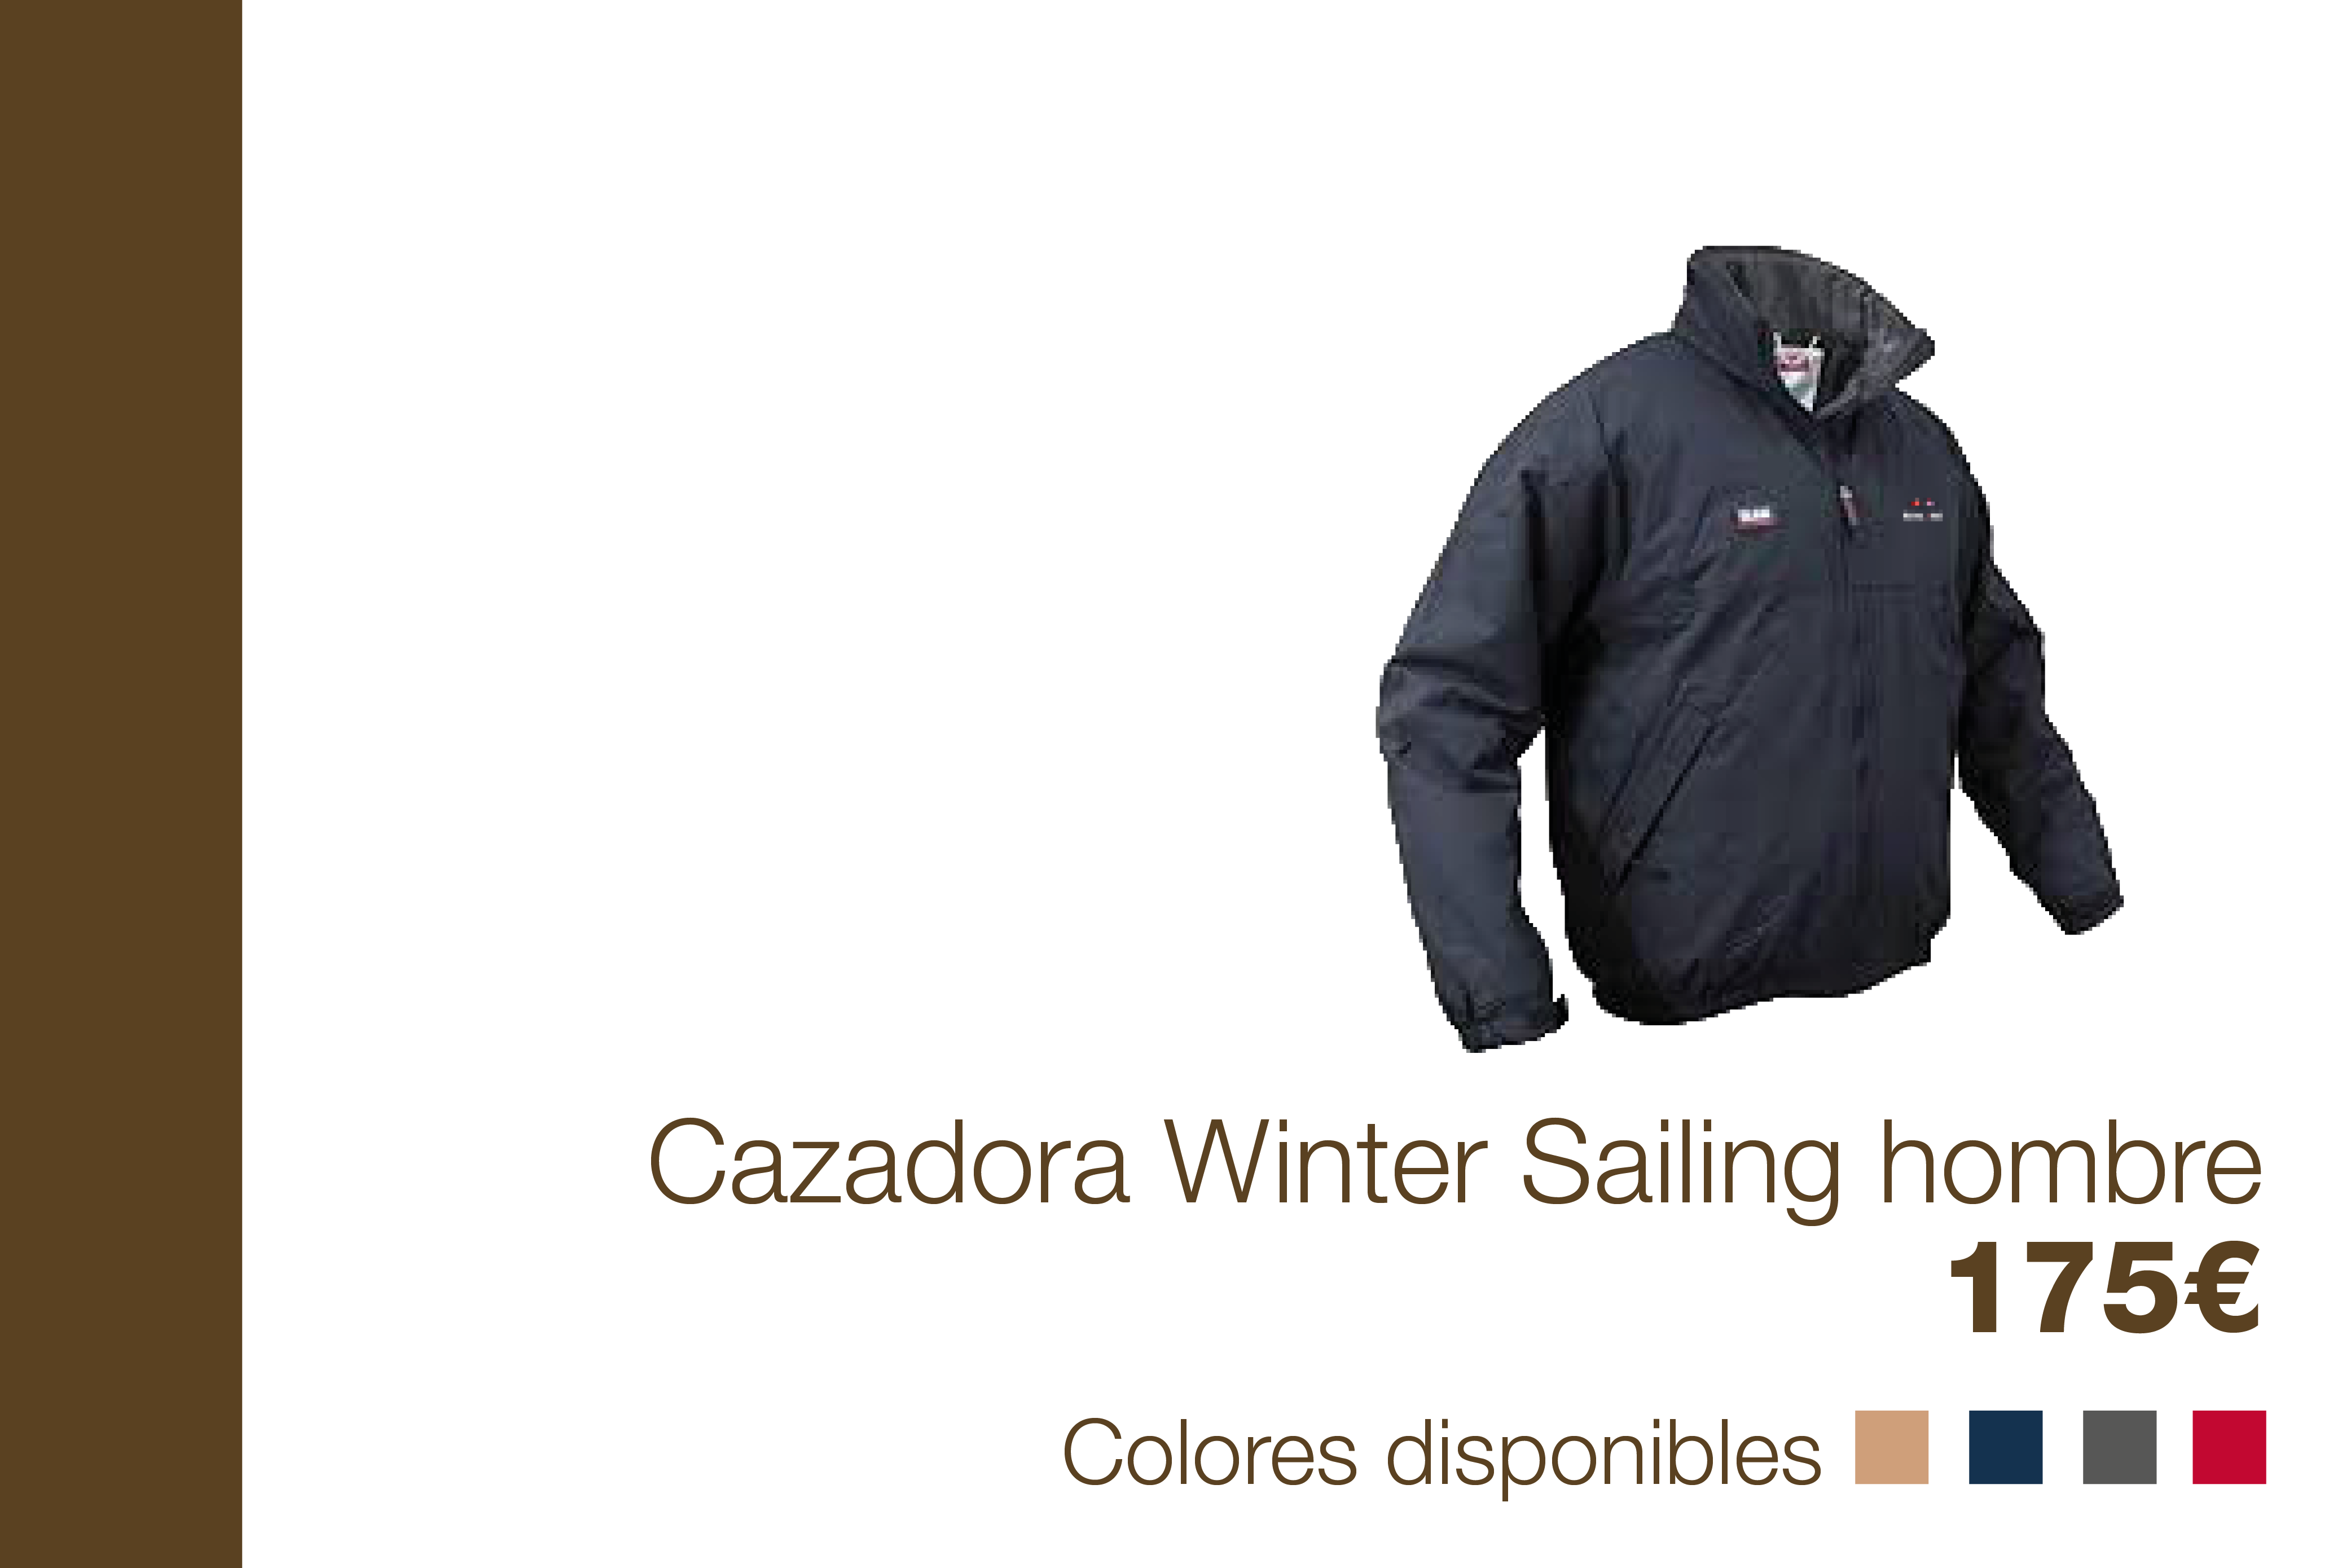 Cazadora Winter Sailing hombre - 175